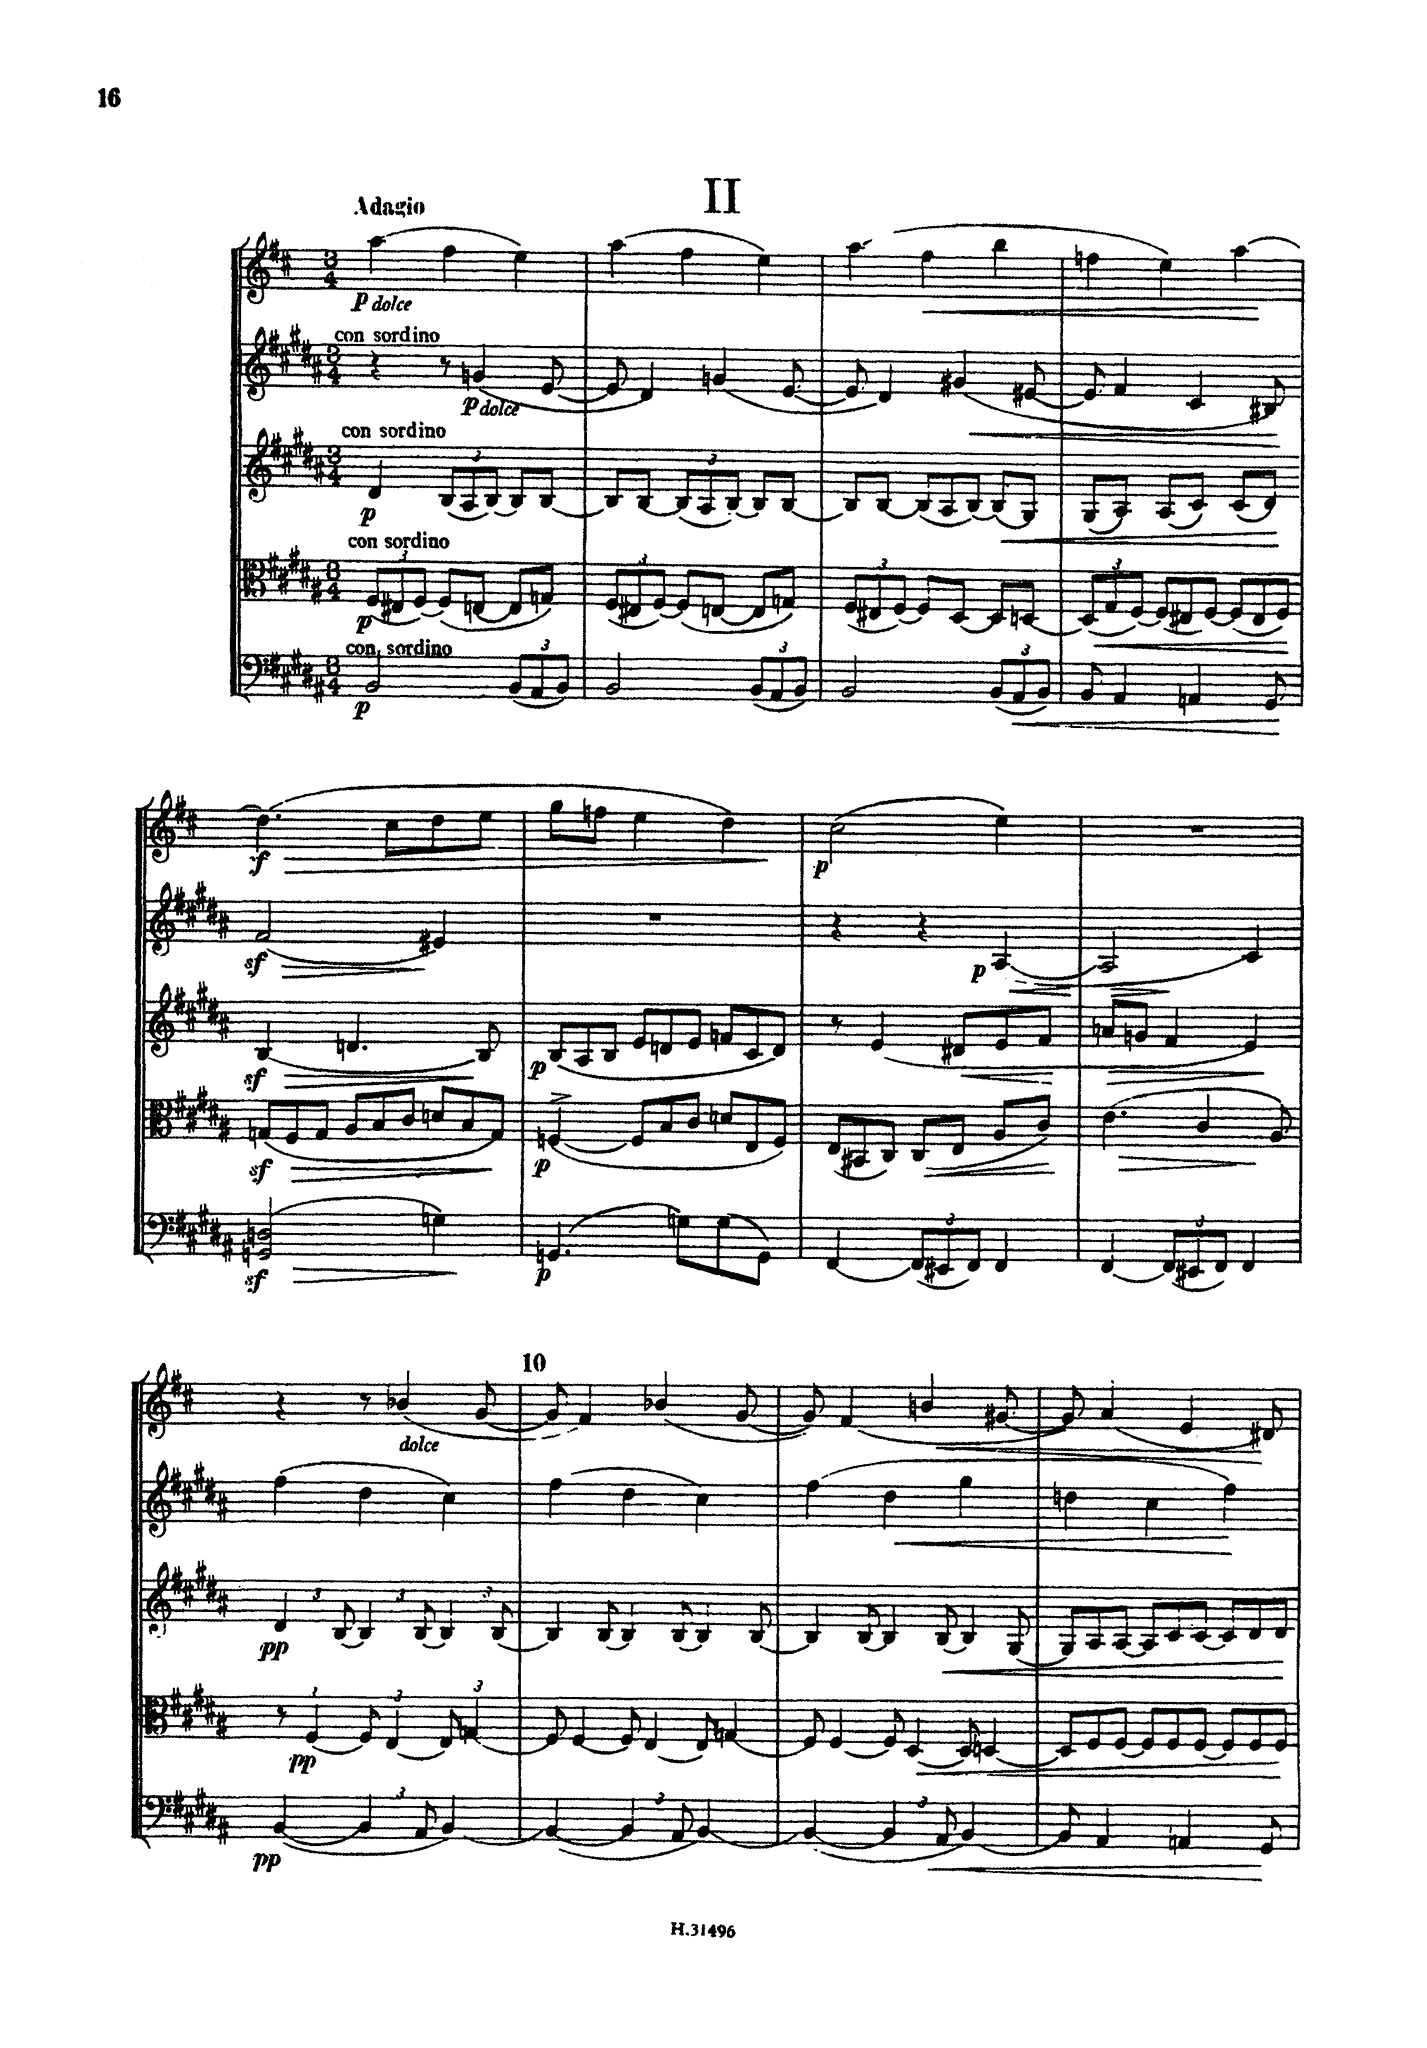 Brahms Clarinet Quintet, Op. 115 pocket score - Movement 2